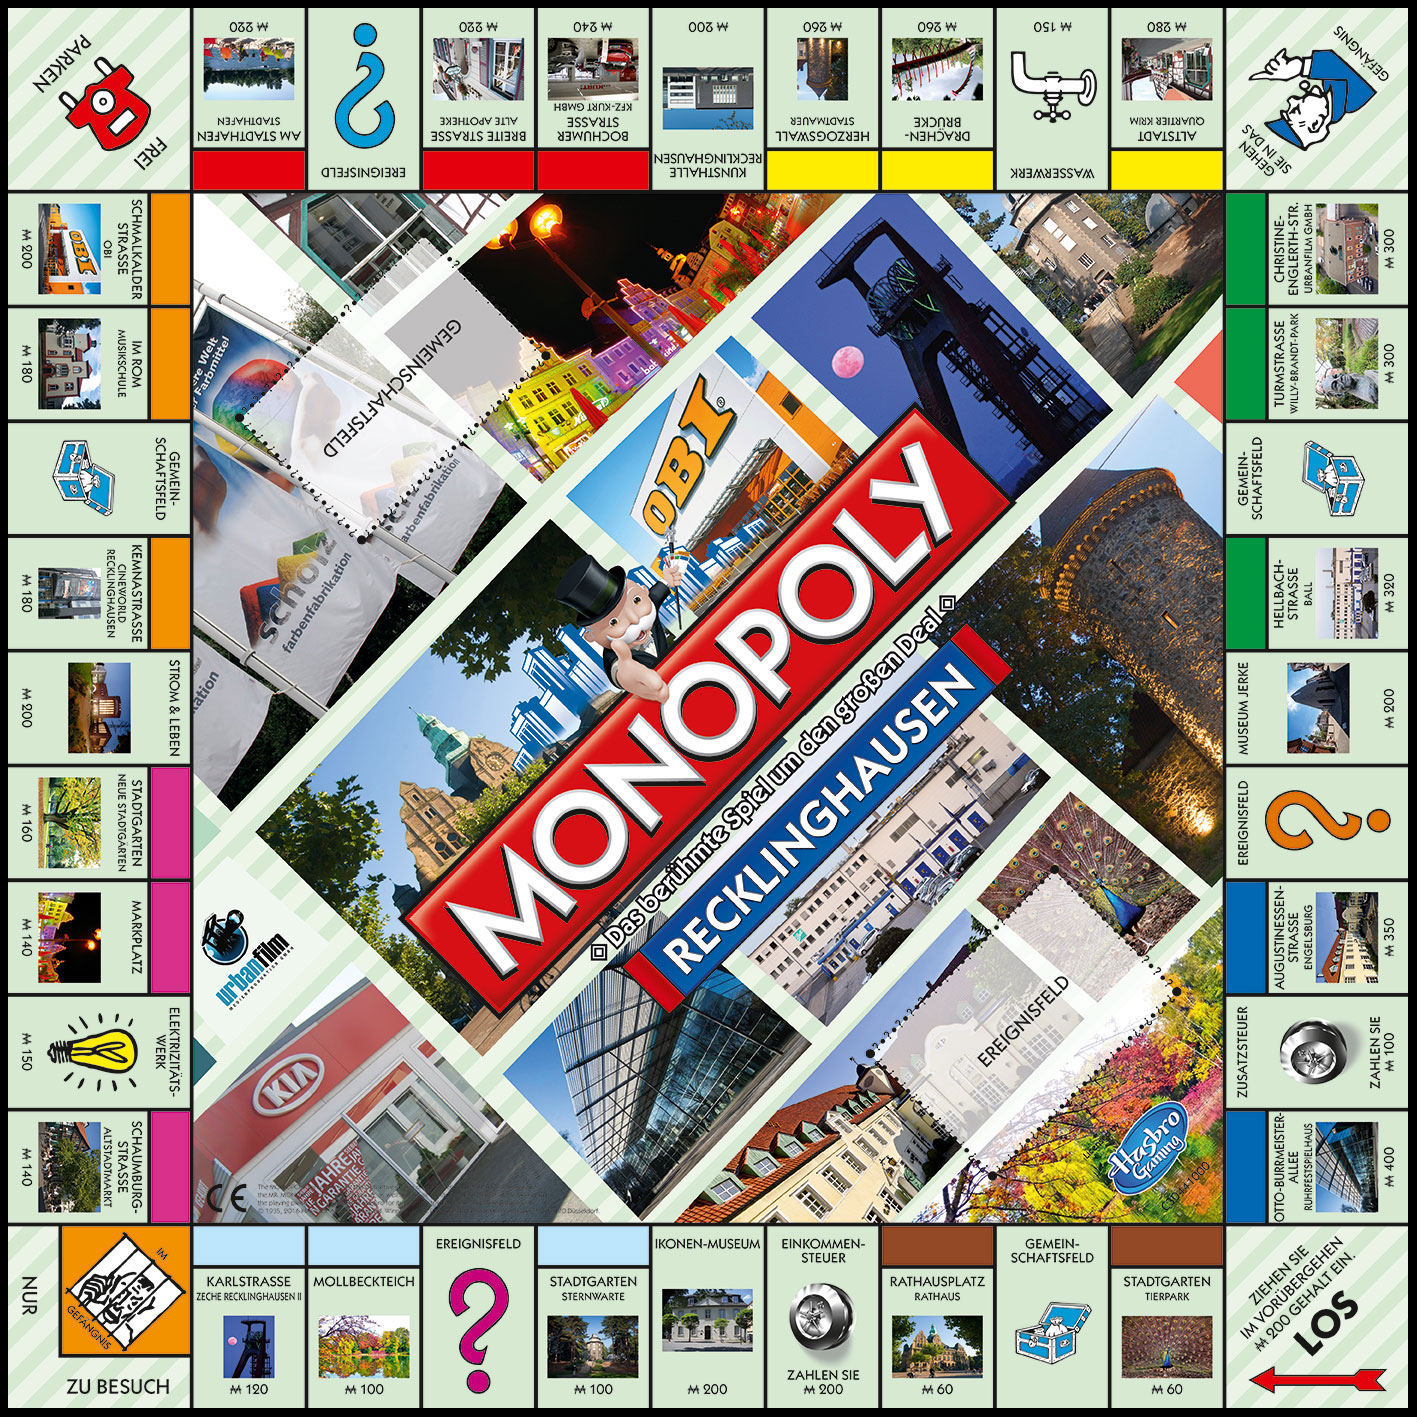 Monopoly Städteedition - Recklinghausen